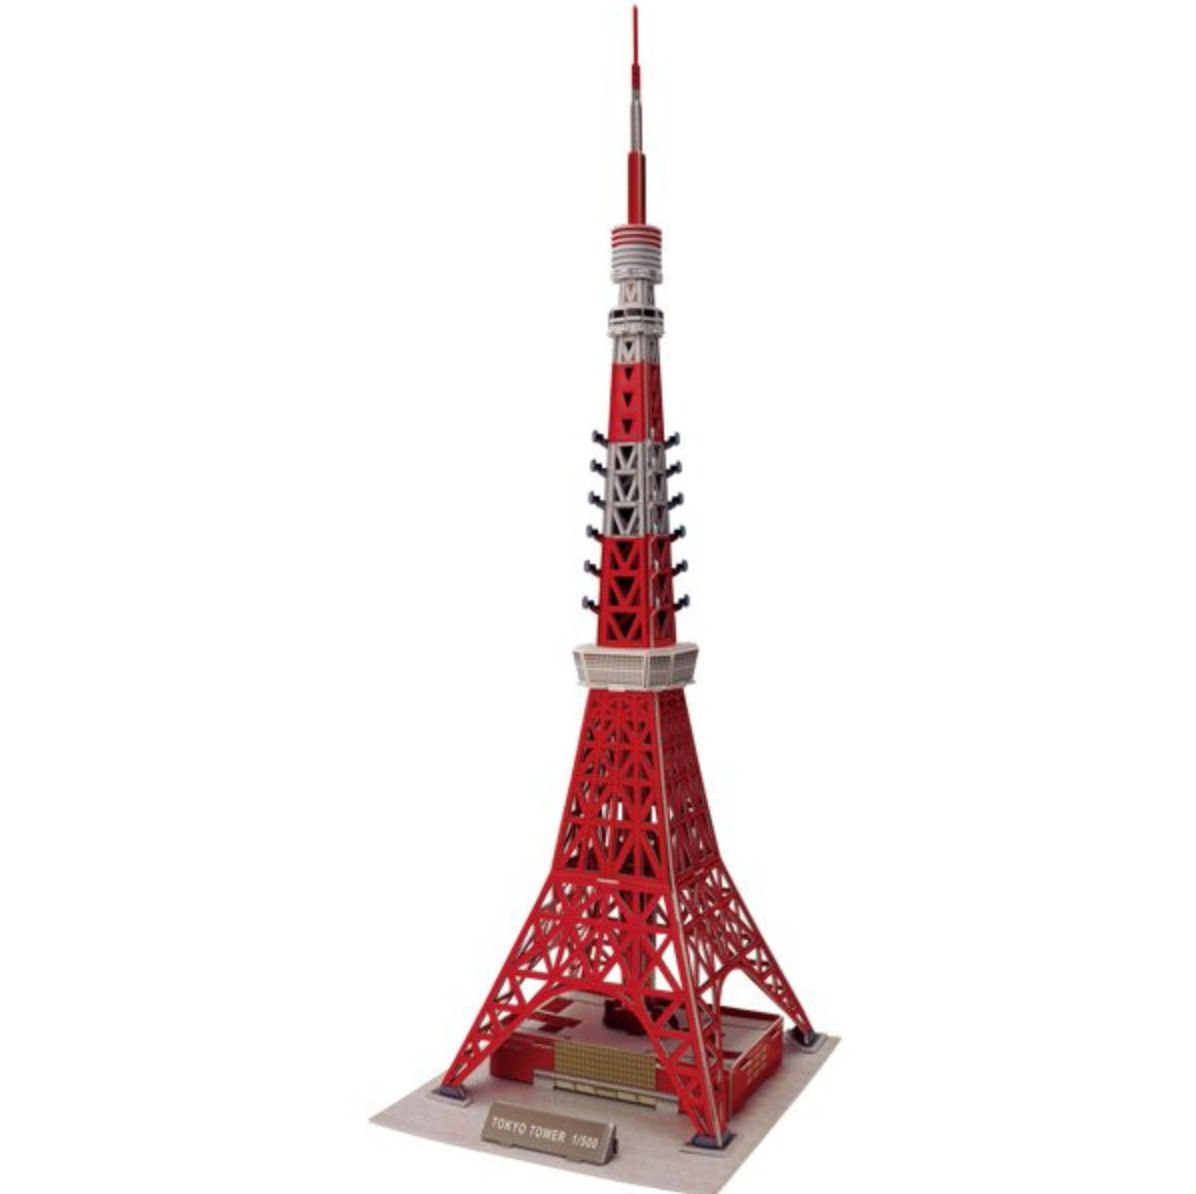 Những điều thú vị về ngọn tháp cao nhất Nhật Bản  VnExpress Du lịch